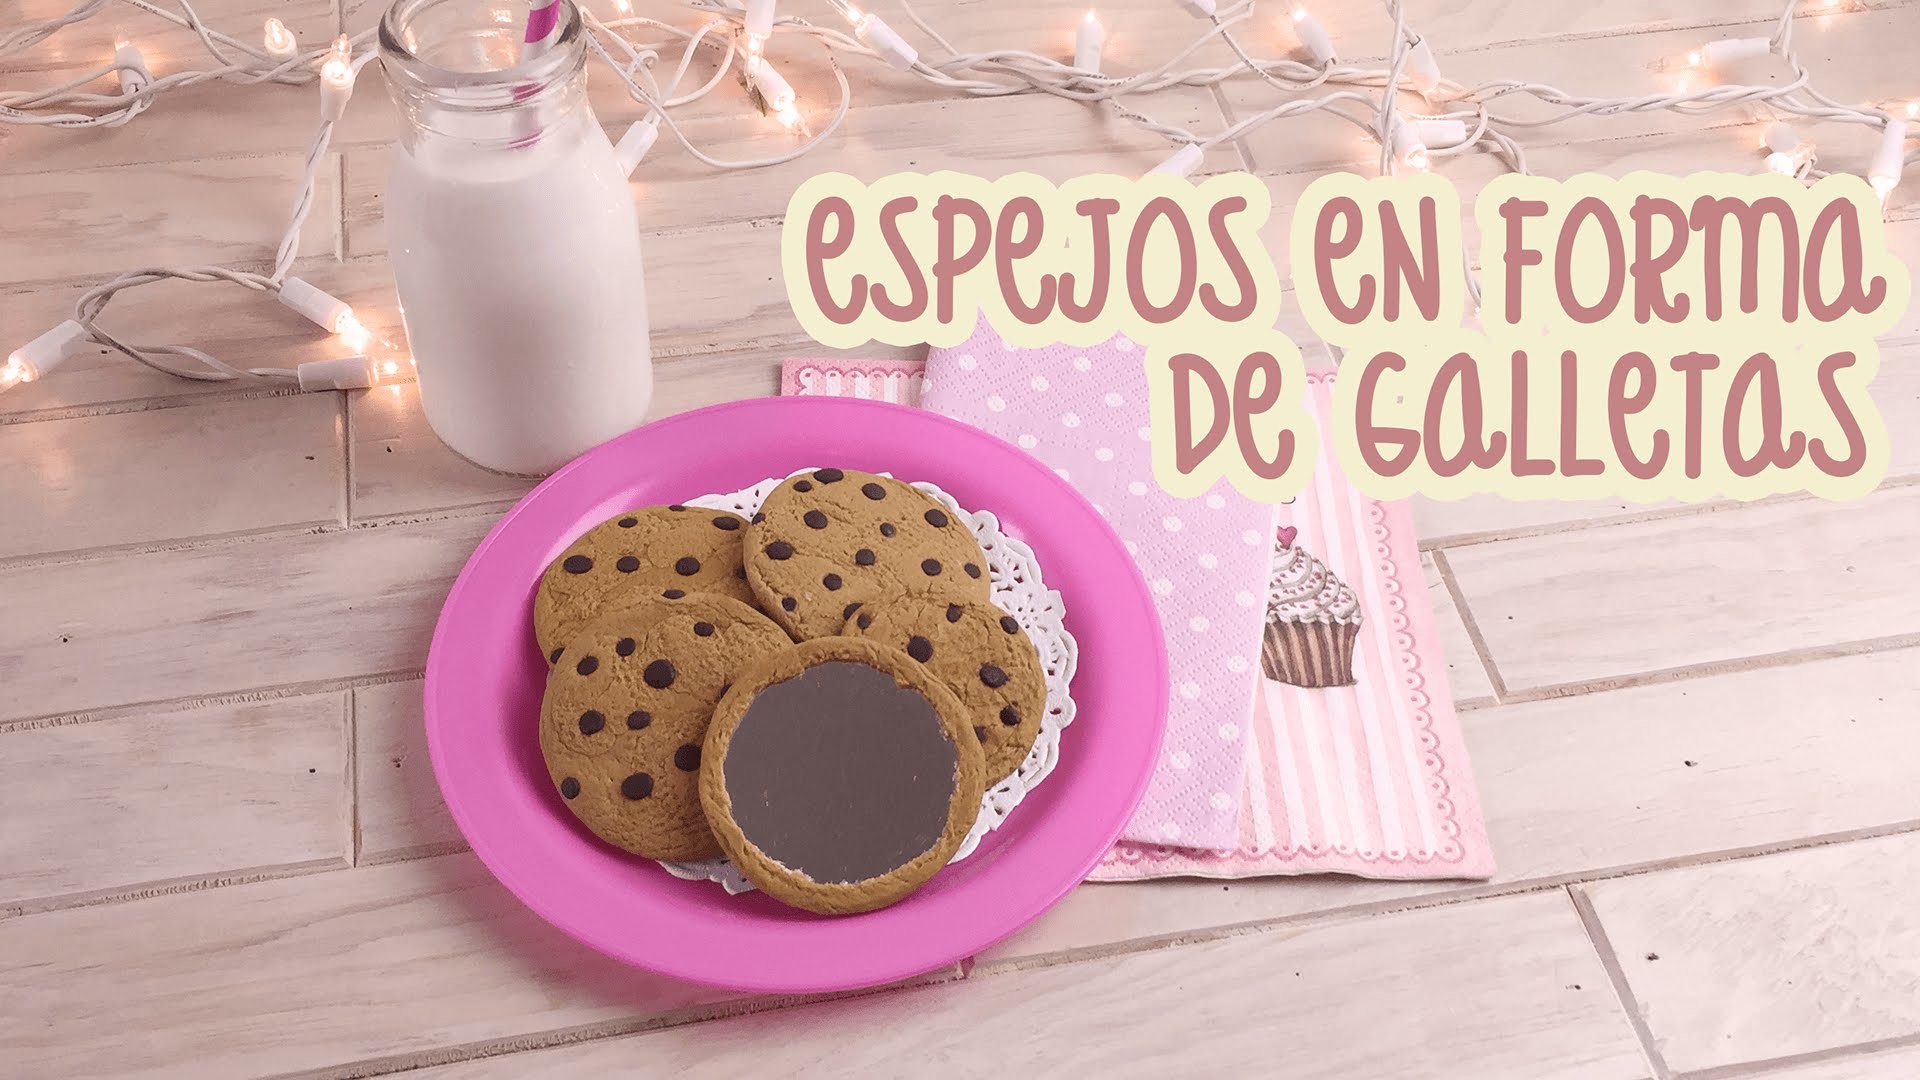 ¡DIY: ESPEJOS EN FORMA DE GALLETAS CON CHISPAS DE CHOCOLATE!